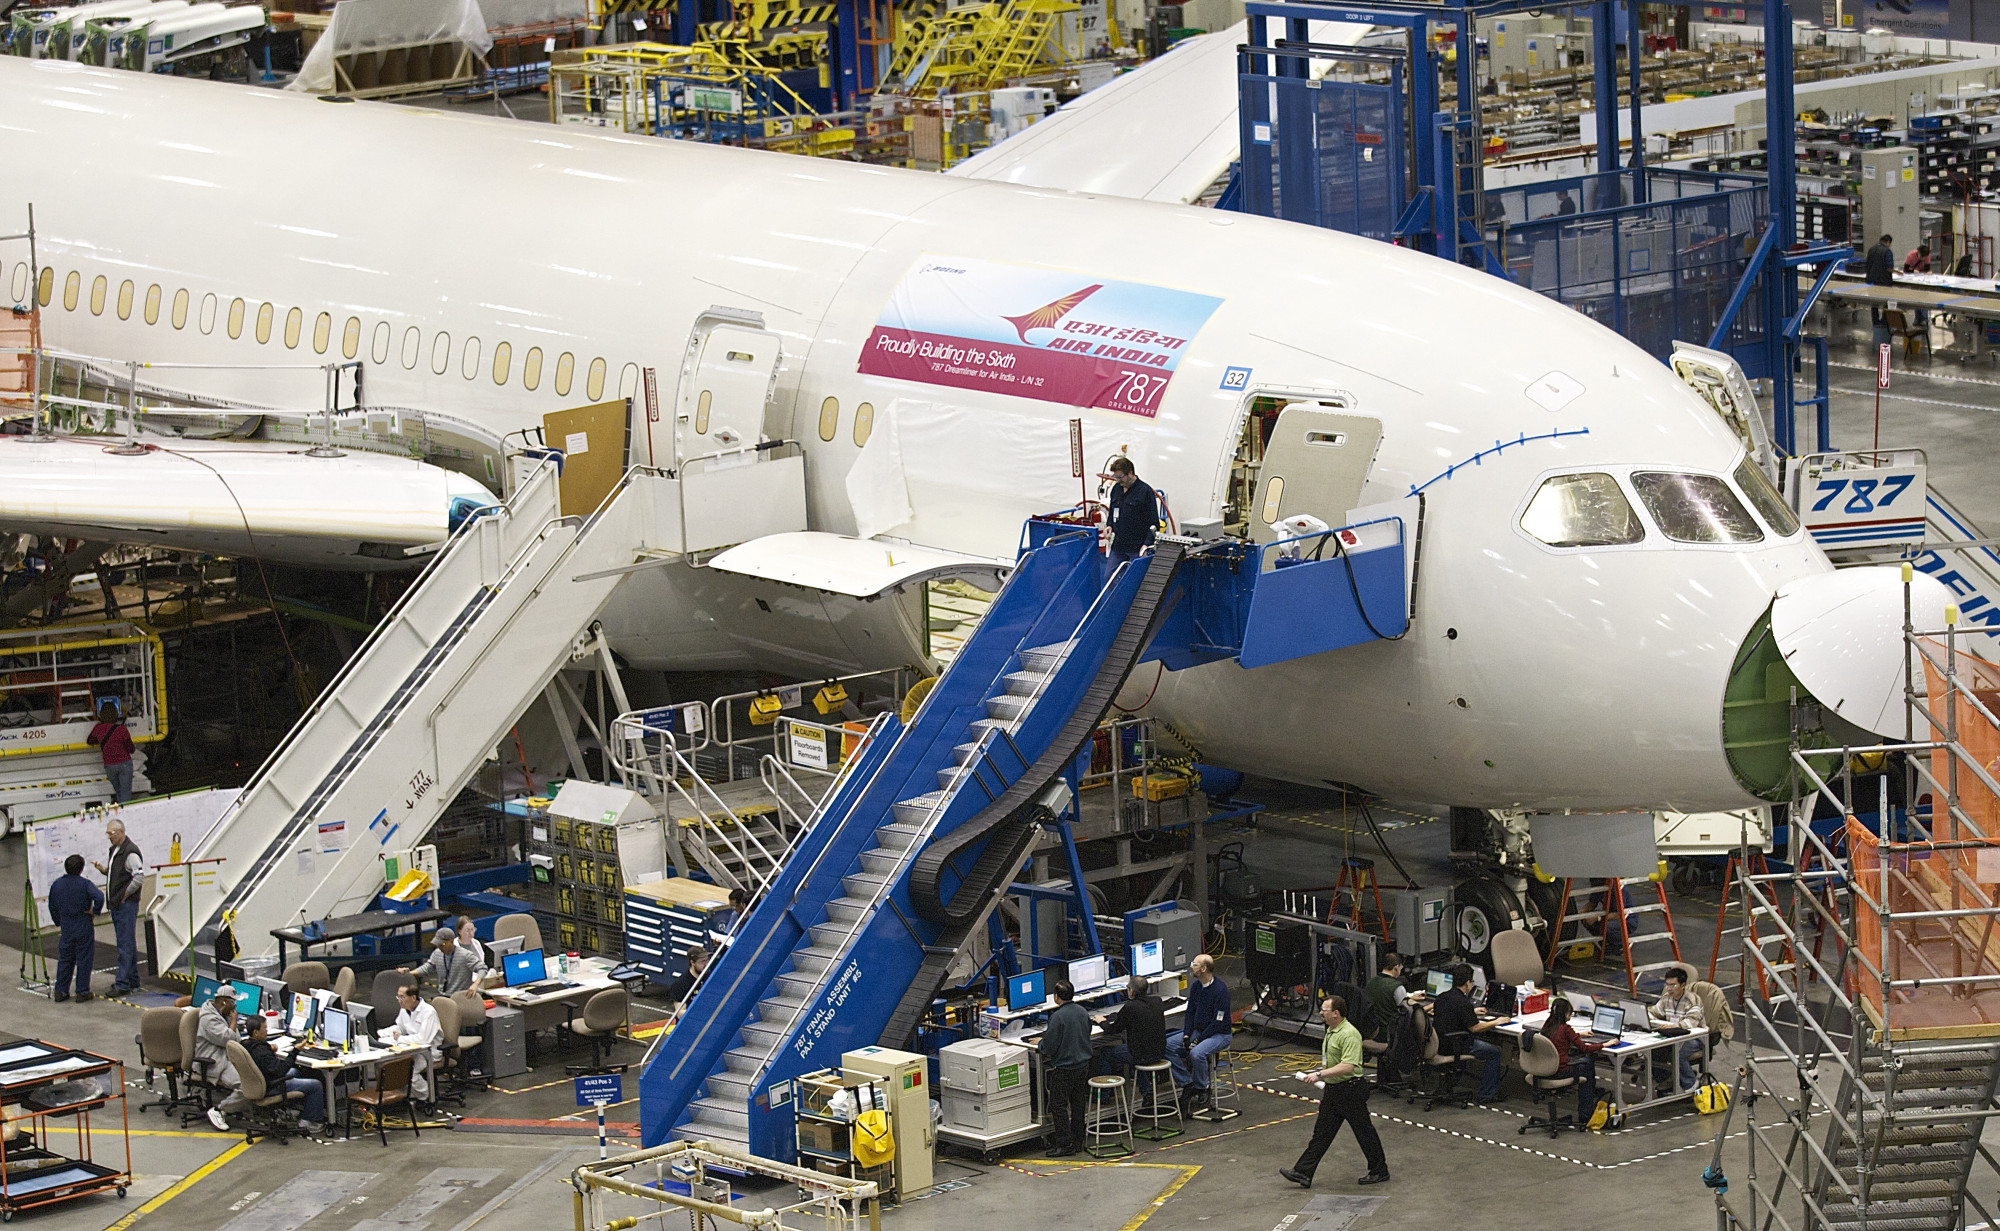 egy munkástól tudta meg a boeing, hogy fontos ellenőrzések maradtak el a 787 dreamliner gyártása közben